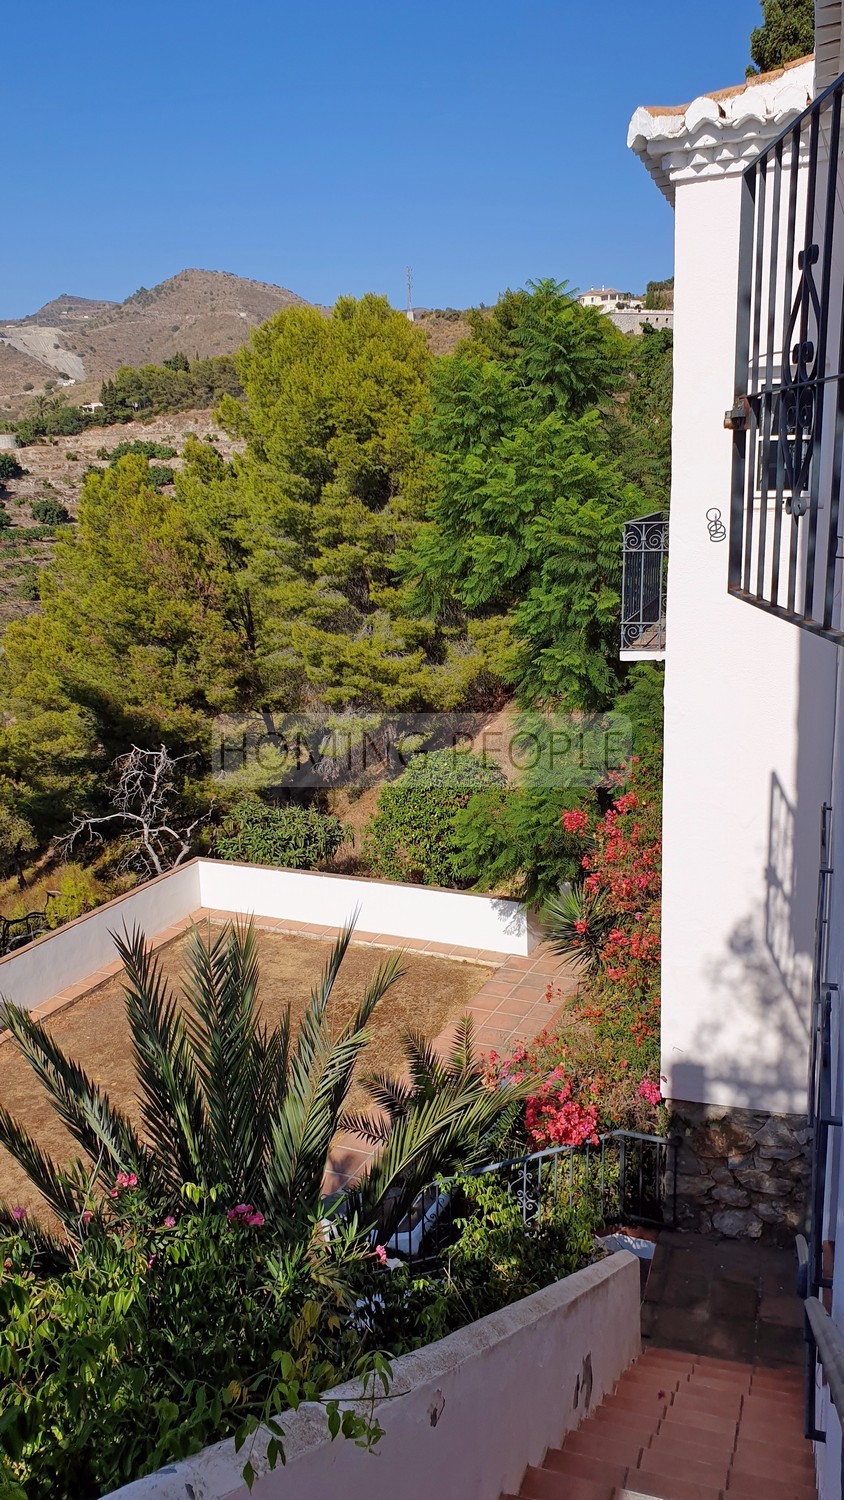 Villa de style andalou avec charme: Verdure, terrasses, piscine et de merveilleuses vues sur la baie...